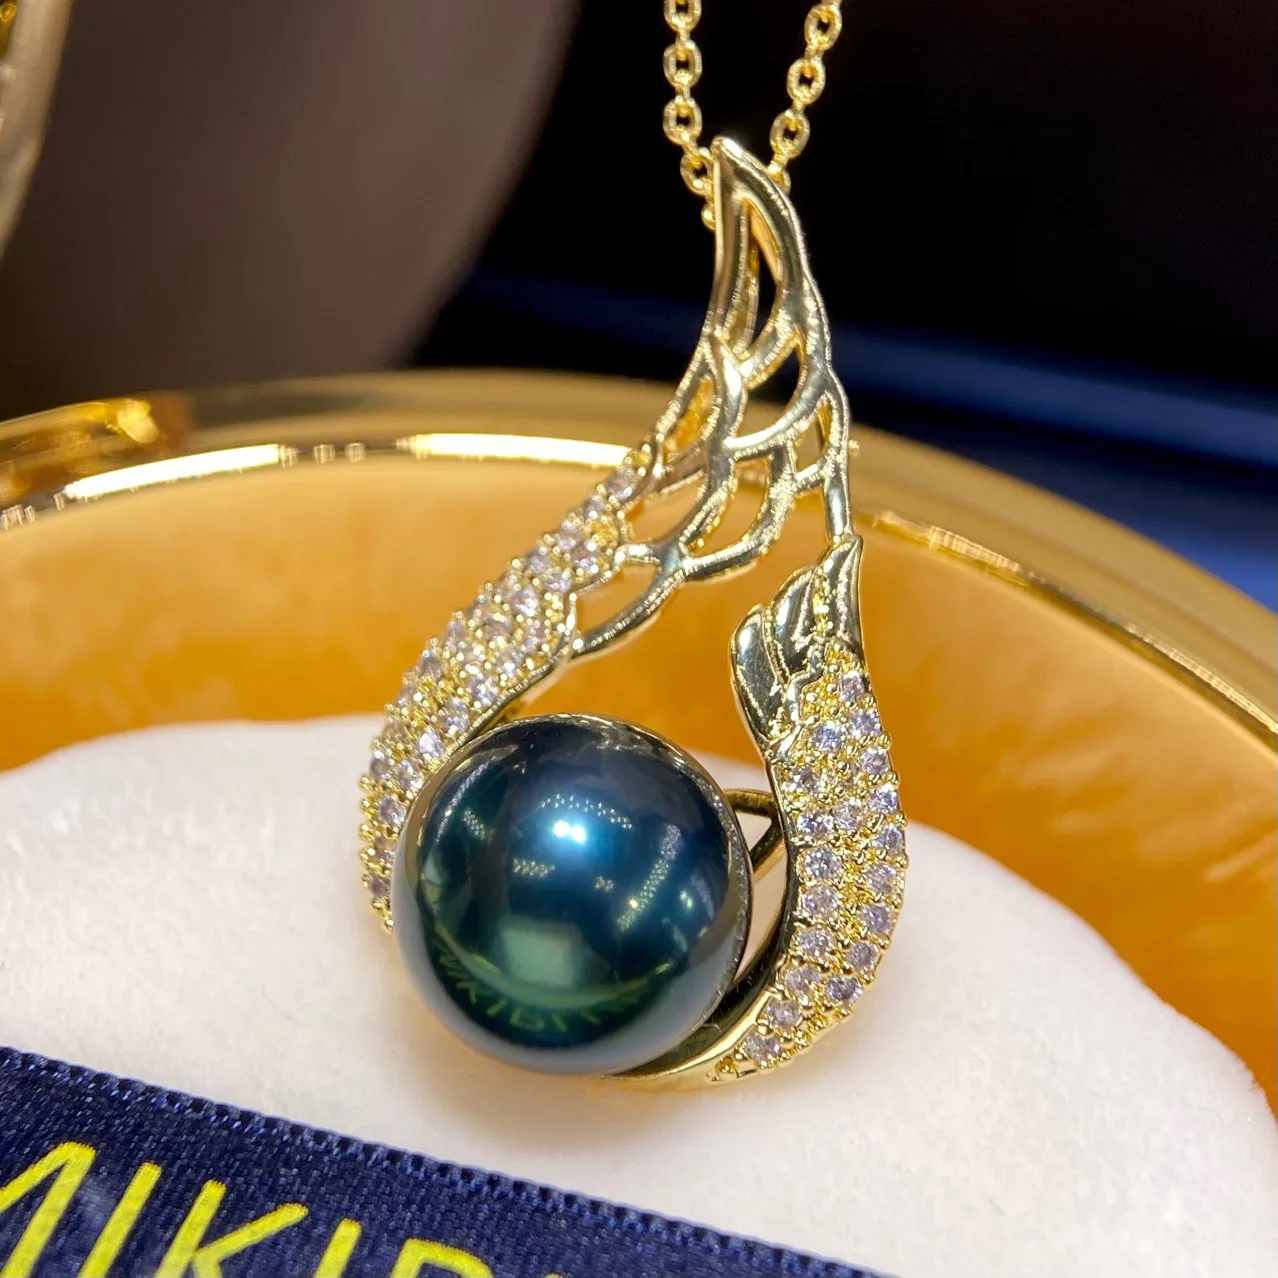 

Ожерелье из черного пресноводного жемчуга 11-12 мм, женский кулон из круглого бусина с инъекцией золотого натурального жемчуга, французская винтажная жемчужная подвеска